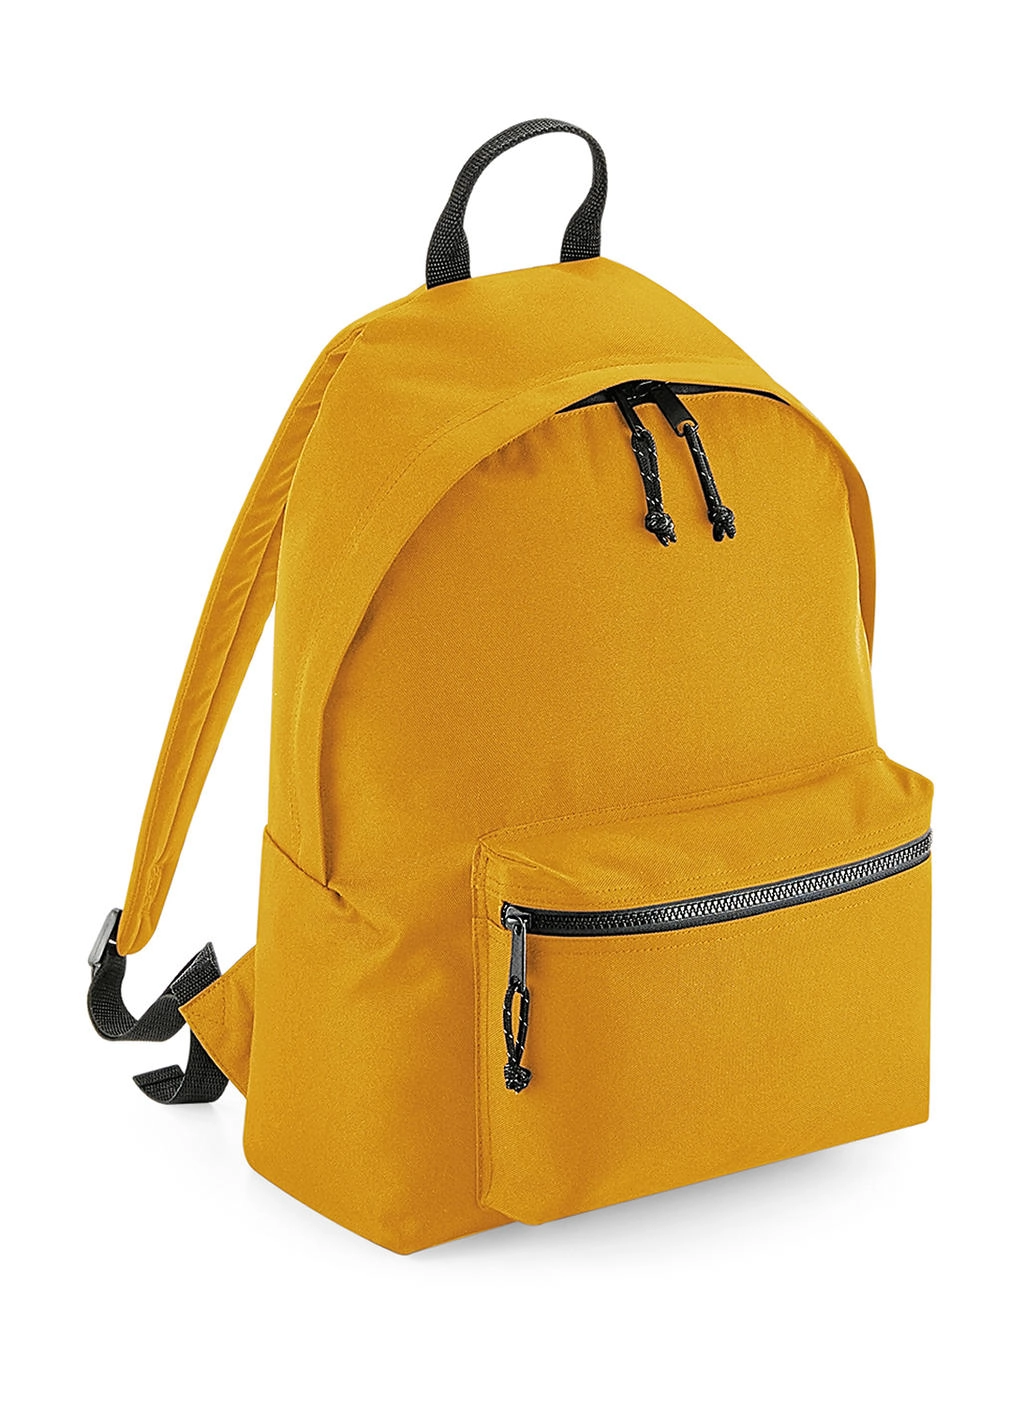 Recycled Backpack zum Besticken und Bedrucken in der Farbe Mustard mit Ihren Logo, Schriftzug oder Motiv.